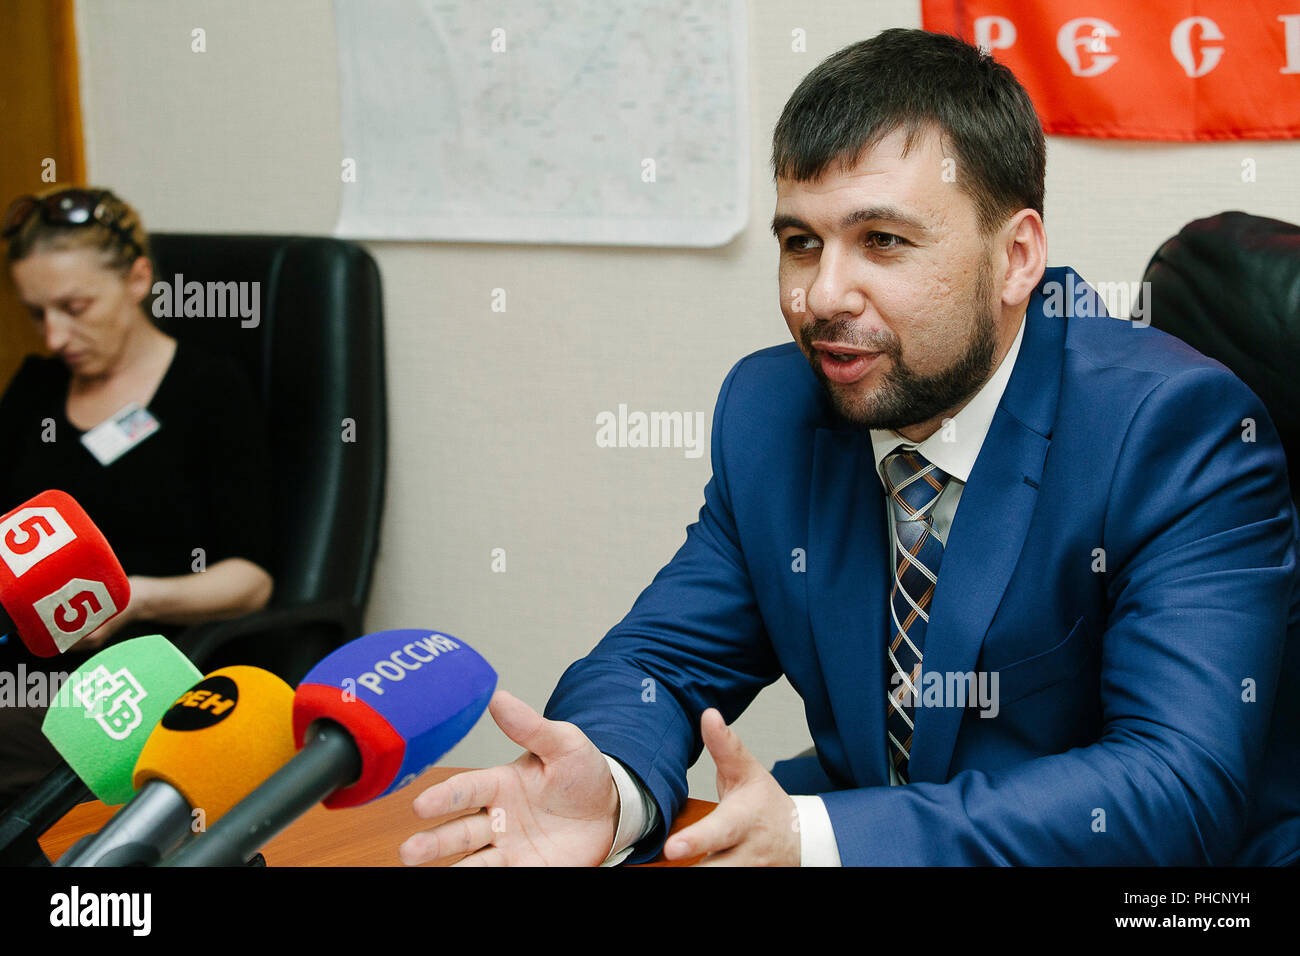 Pushilin Denis, Président de la République populaire de Donetsk (MRN), Kremlin soutenu du gouvernement séparatiste qui prennent le contrôle de Donbass région Banque D'Images